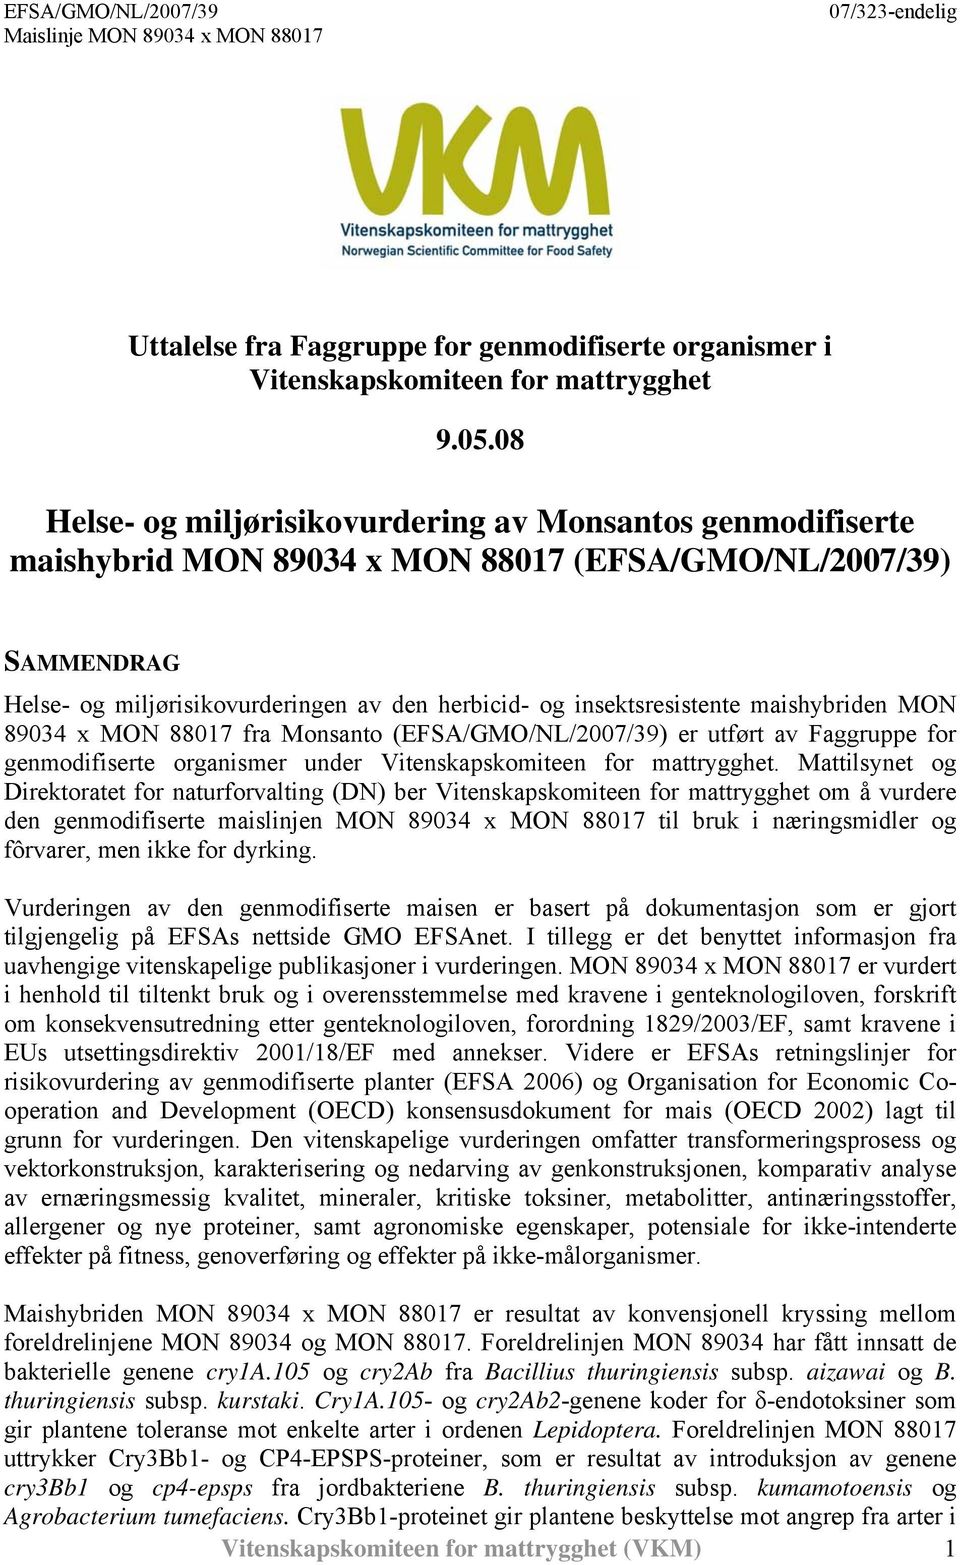 maishybriden MON 89034 x MON 88017 fra Monsanto (EFSA/GMO/NL/2007/39) er utført av Faggruppe for genmodifiserte organismer under Vitenskapskomiteen for mattrygghet.